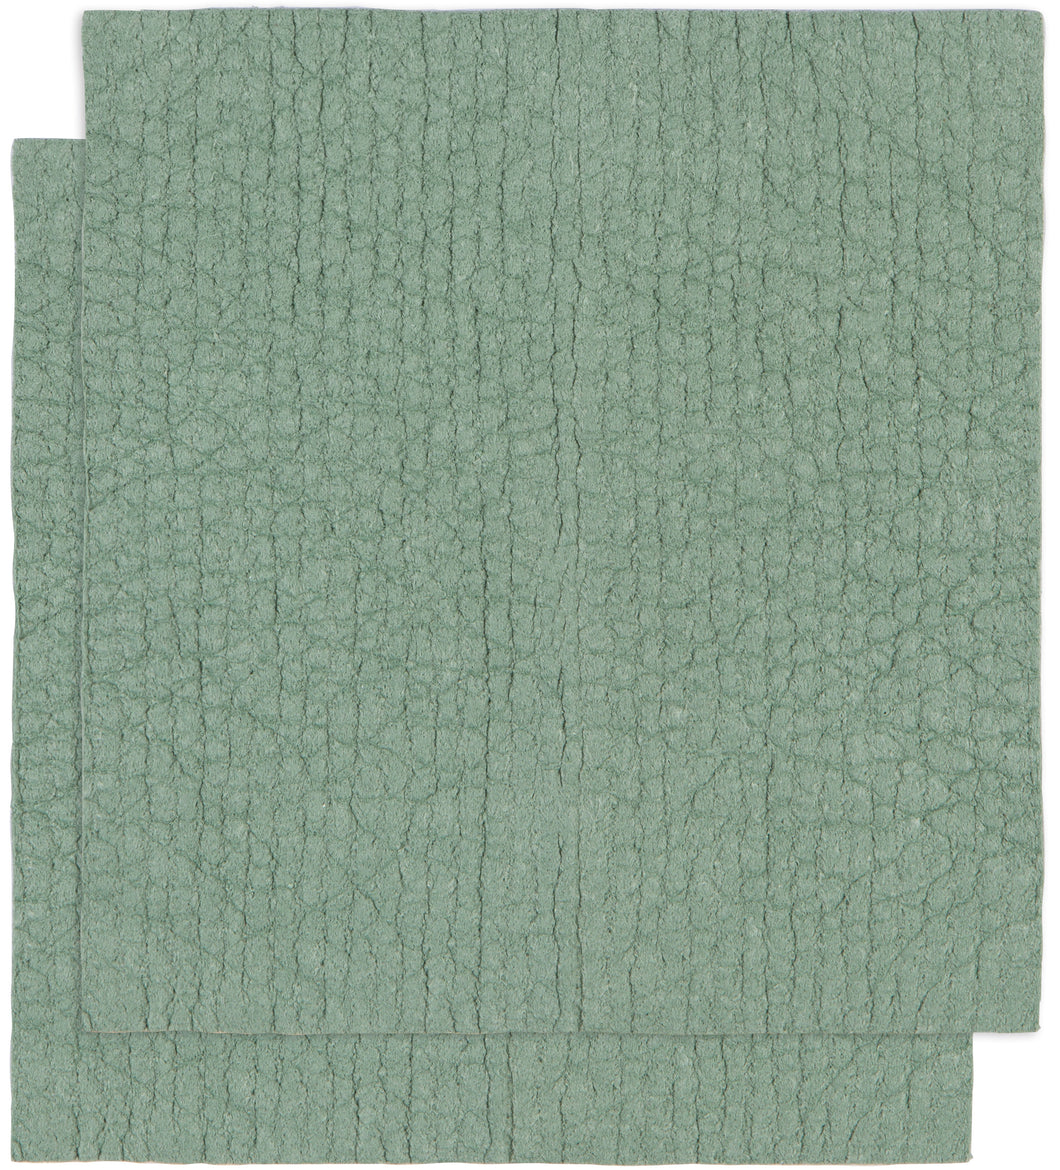 Elm Green Swedish Sponge Cloths Set of 2